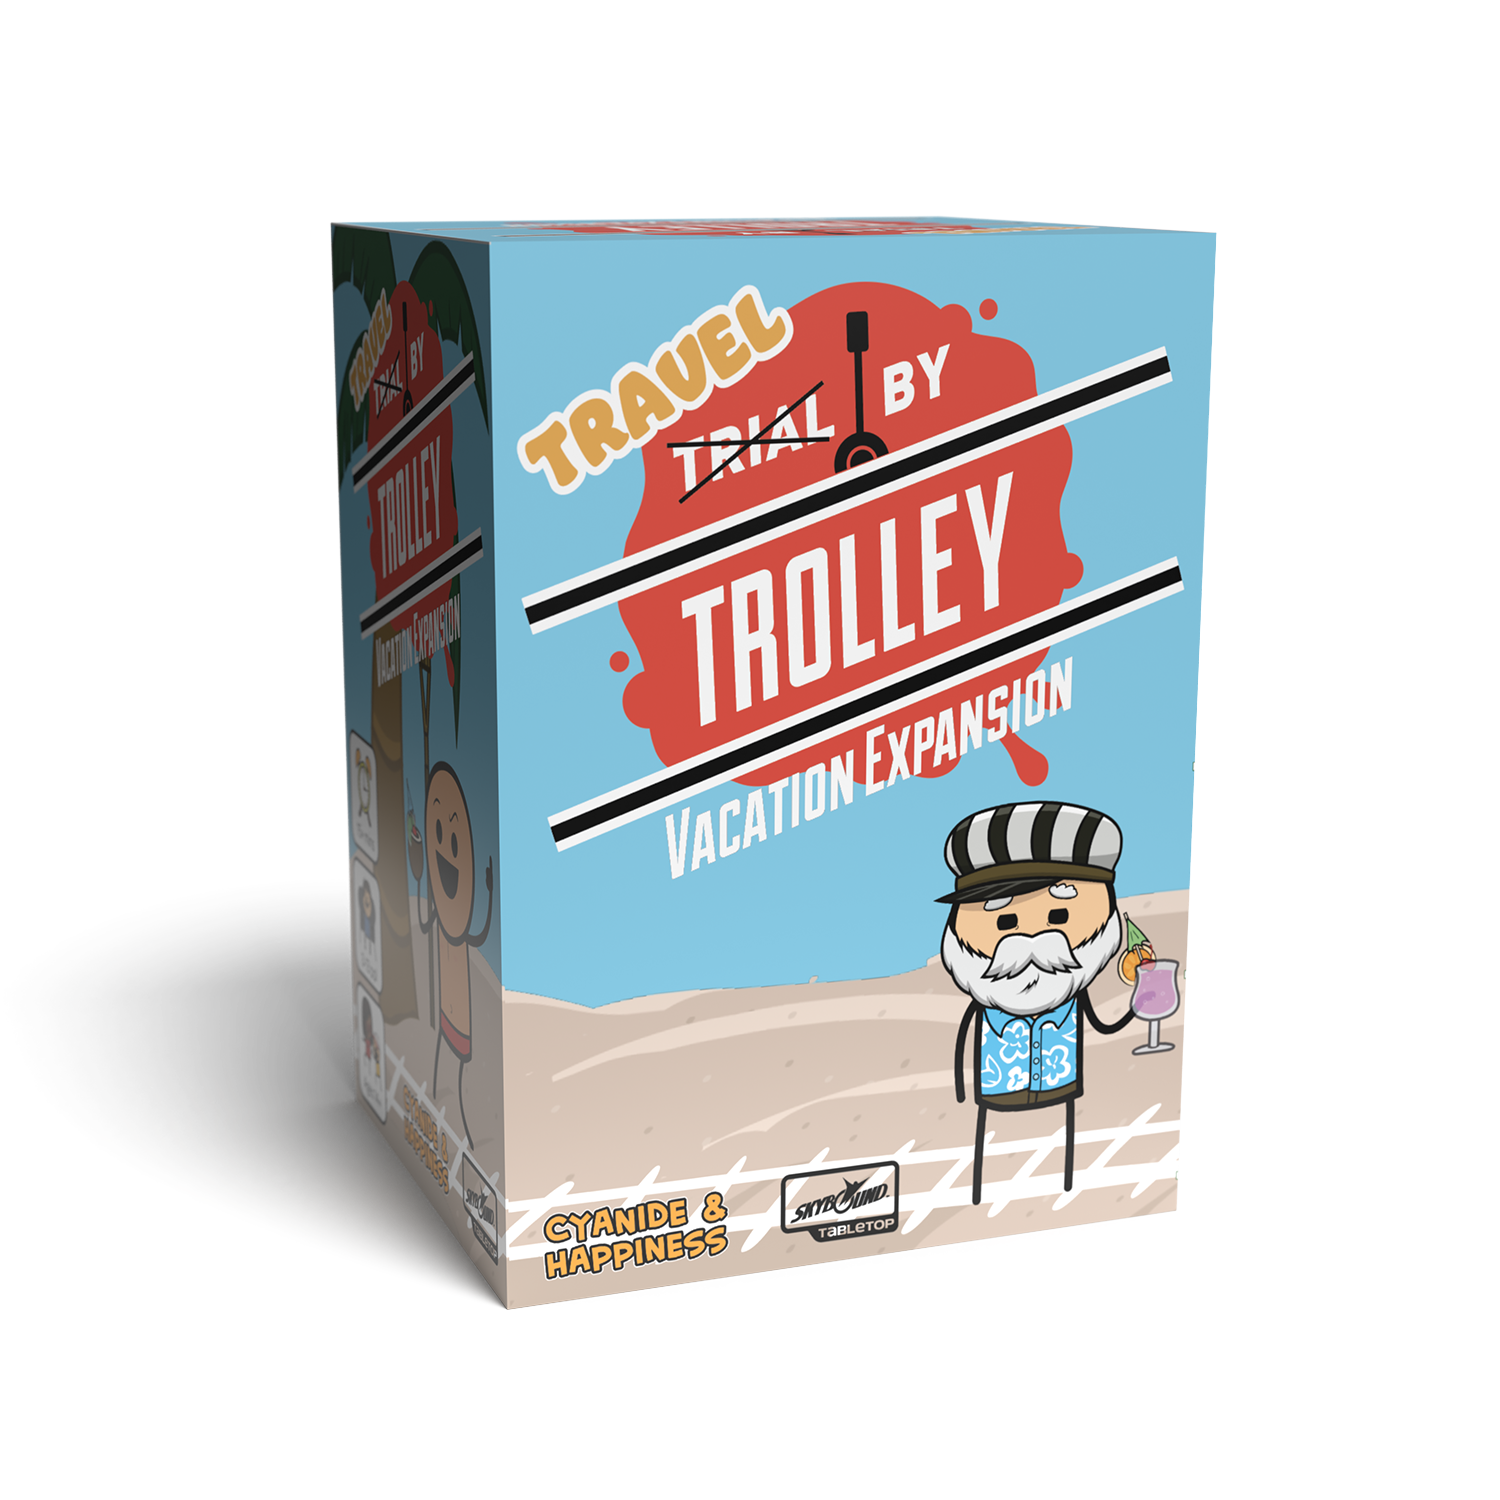 Trial by Trolley: Travel By Trolley